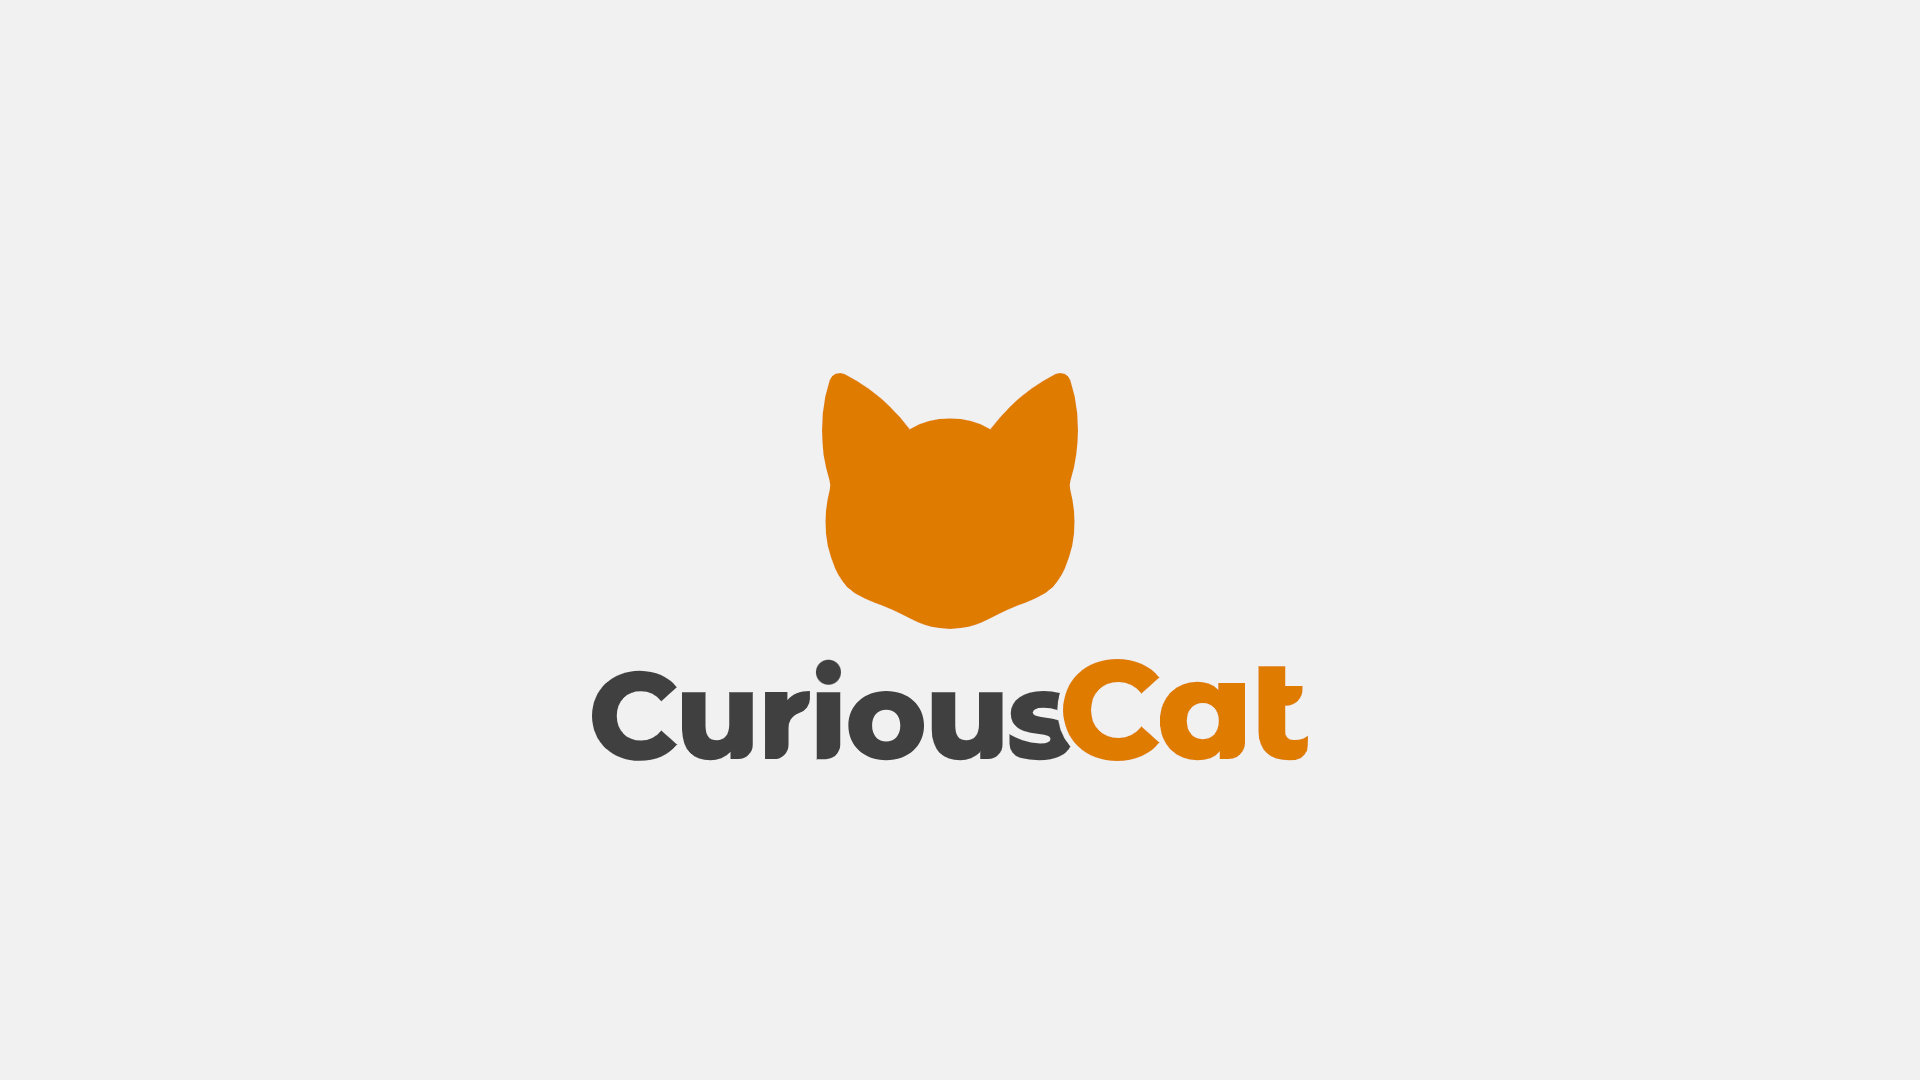 Nom de domaine perdu et tweets étranges, le curieux comportement de Curious Cat interroge